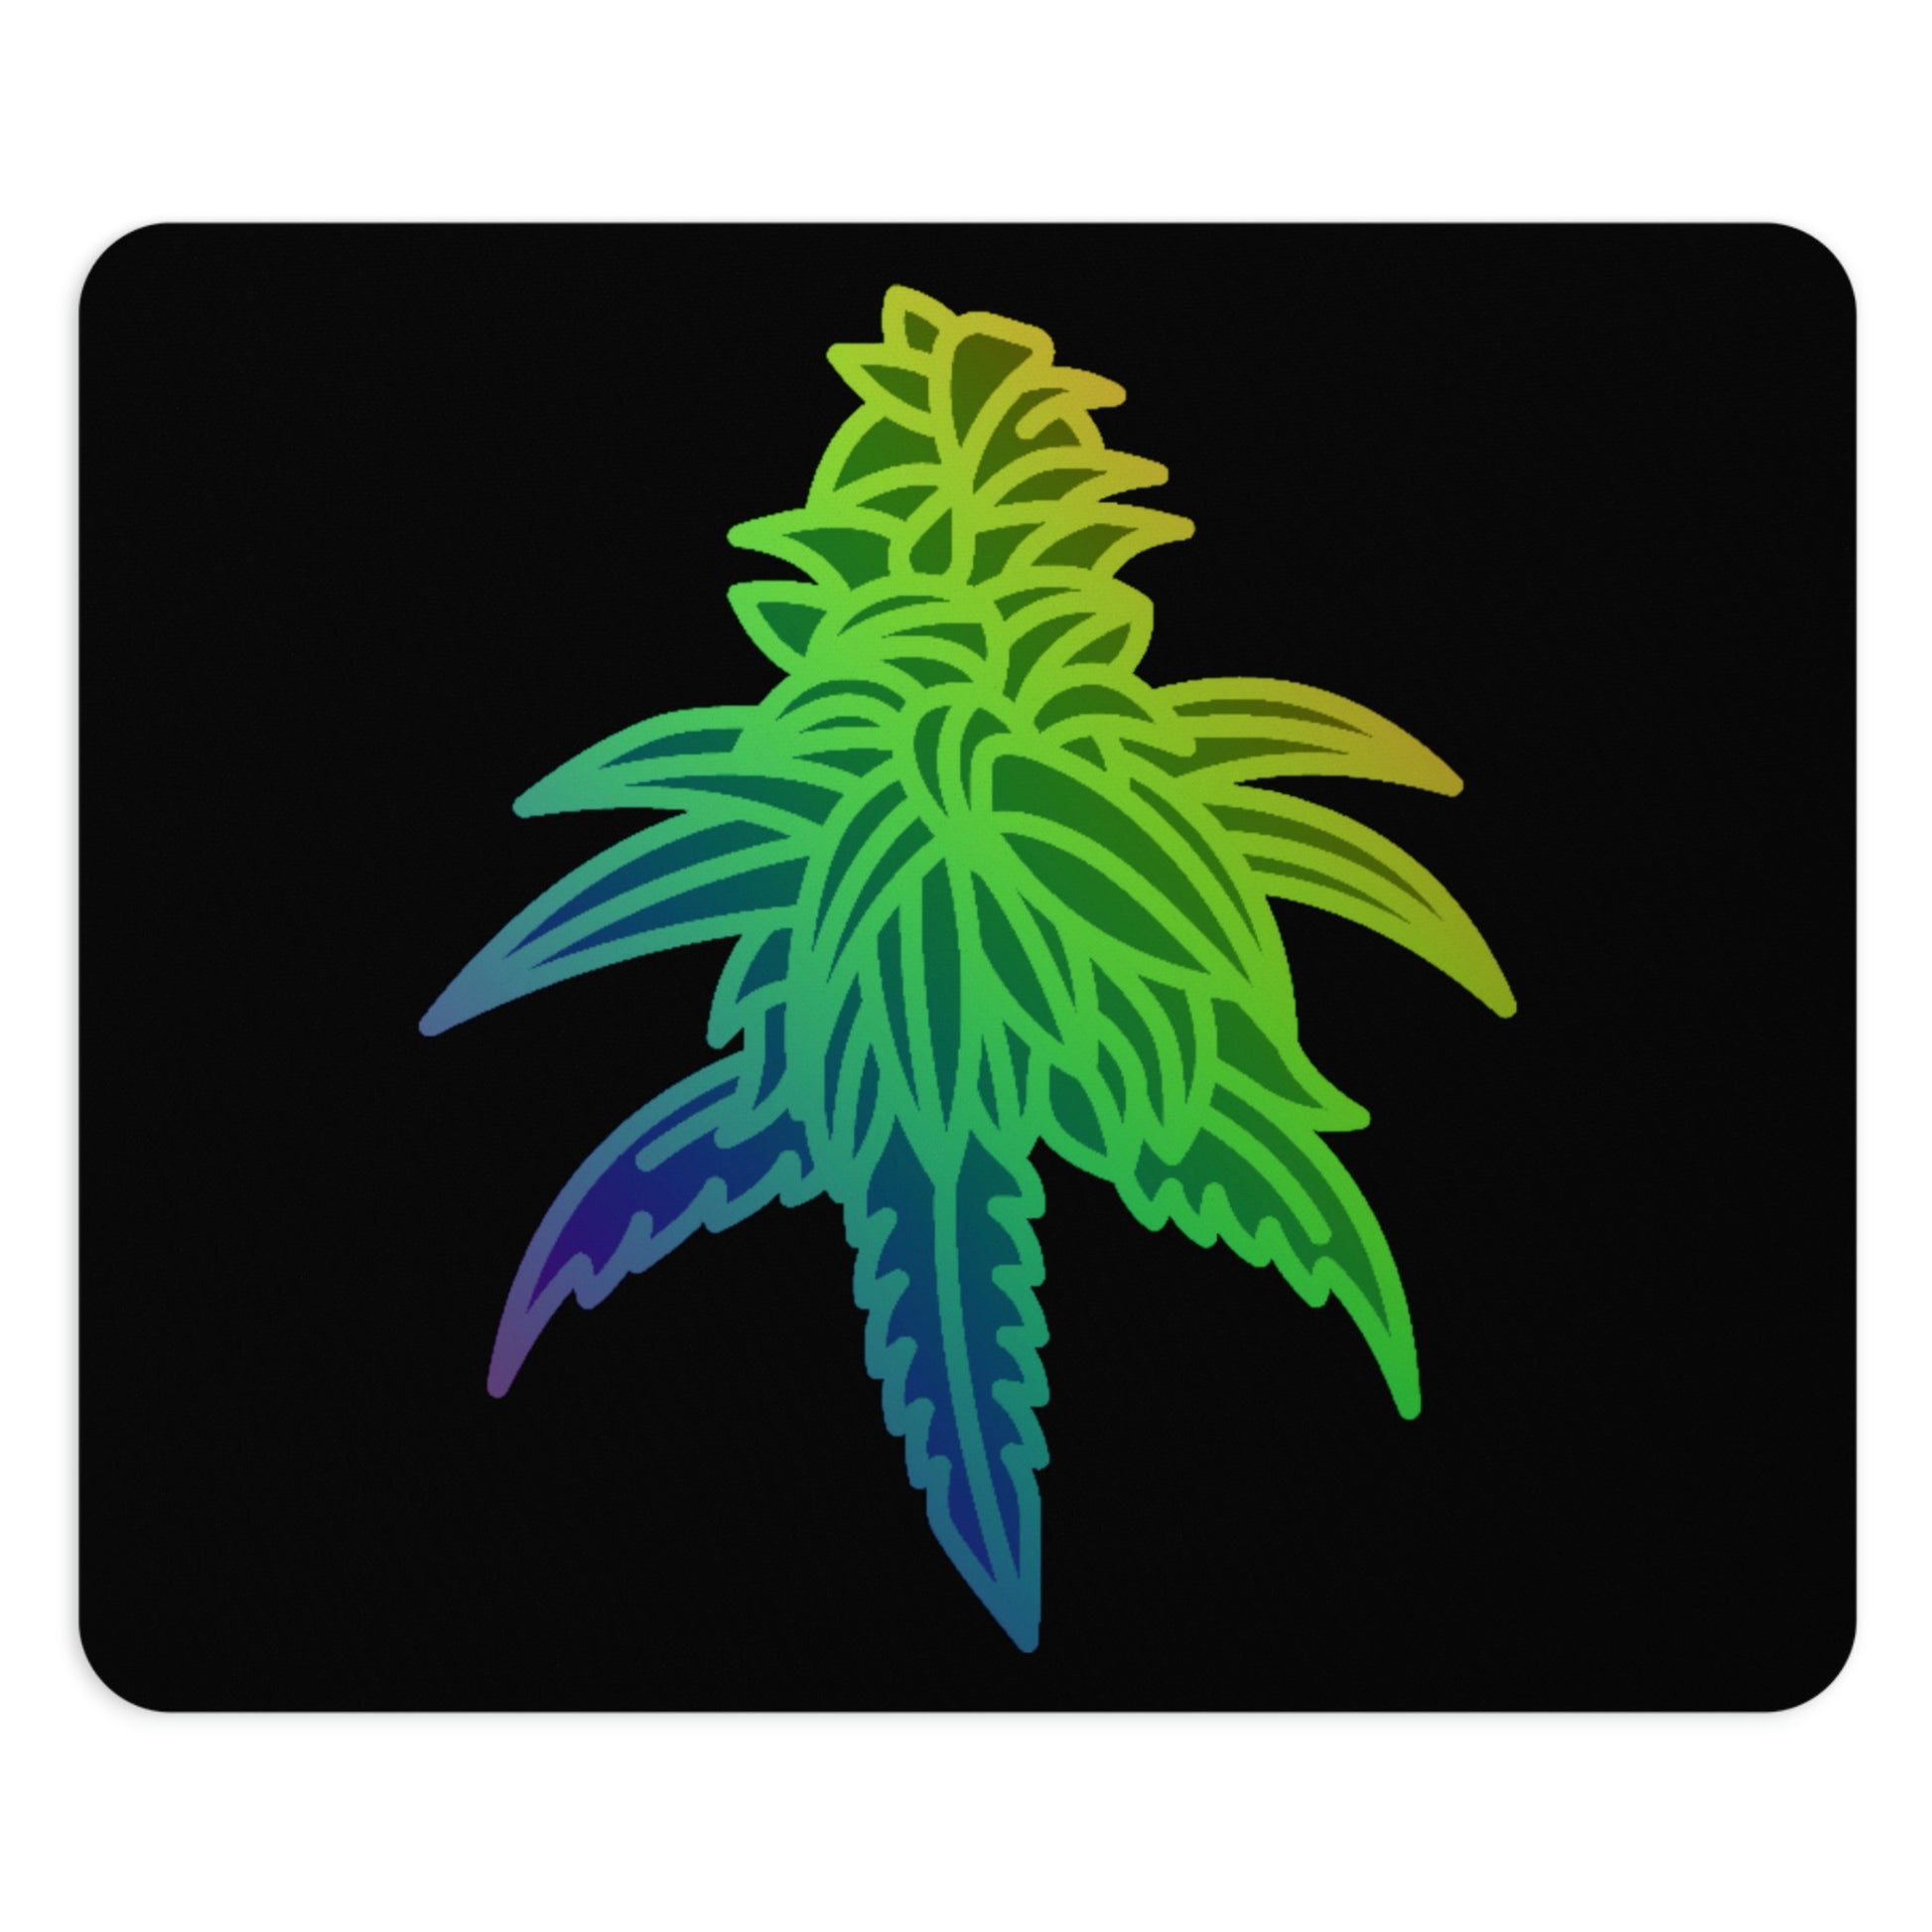 a Rainbow Sherbet Marijuana Mouse Pad with a marijuana leaf on it.